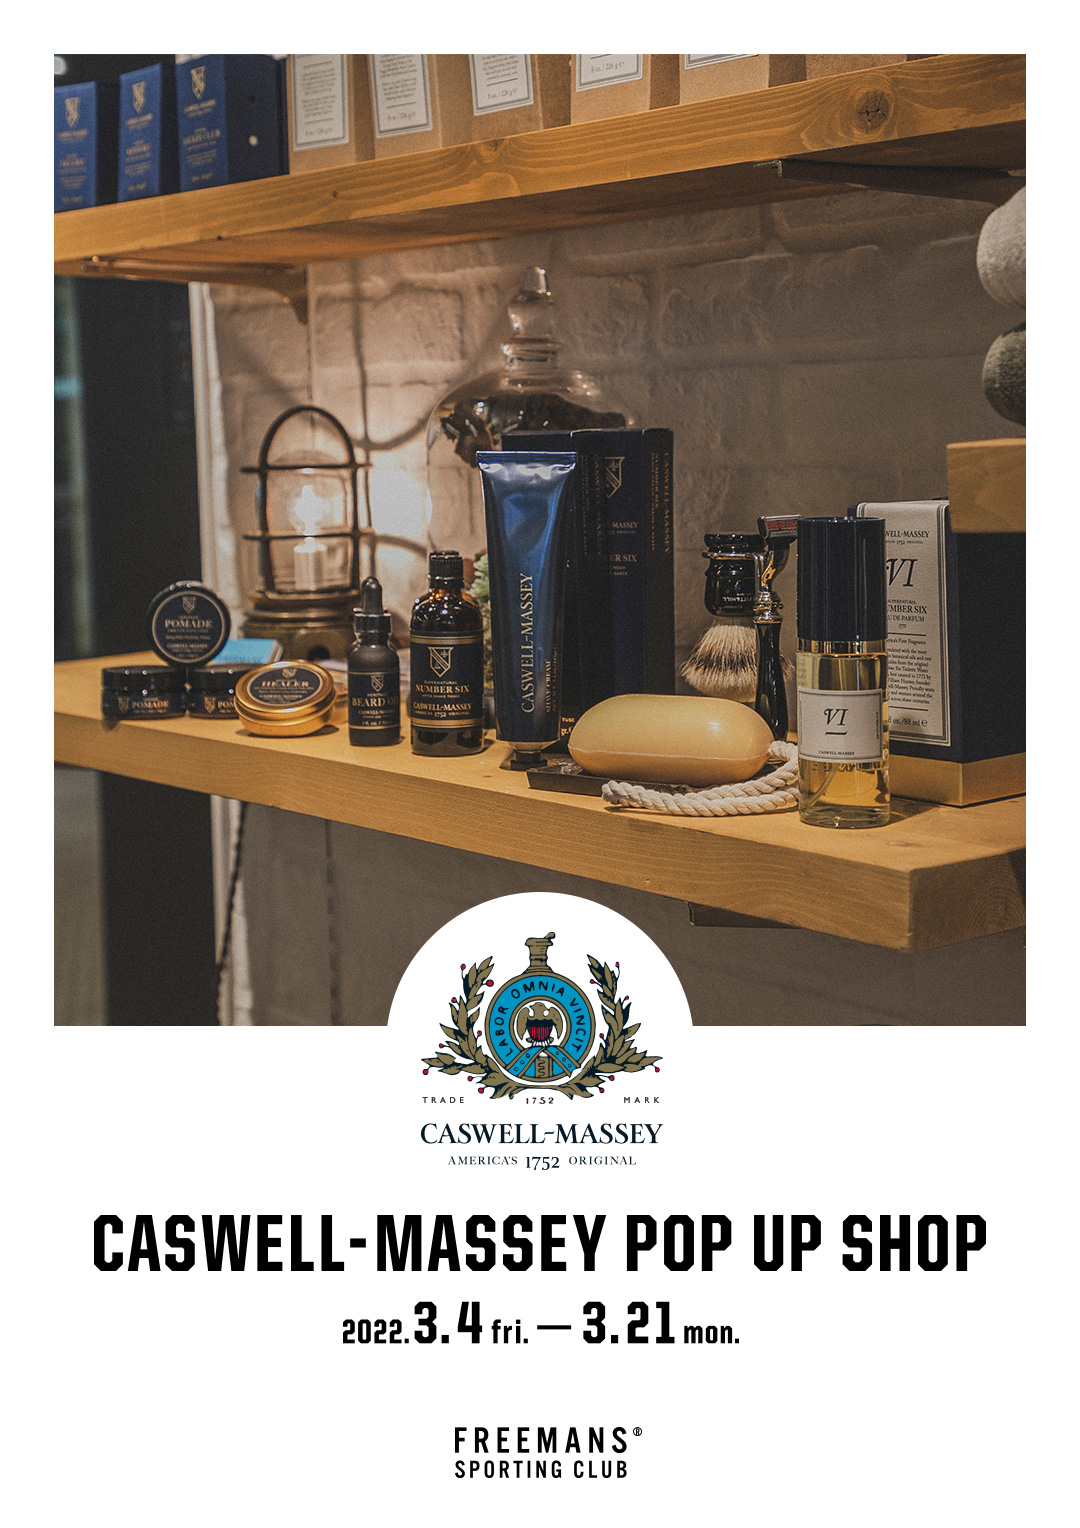 CASWELL-MASSEY POP UP SHOP